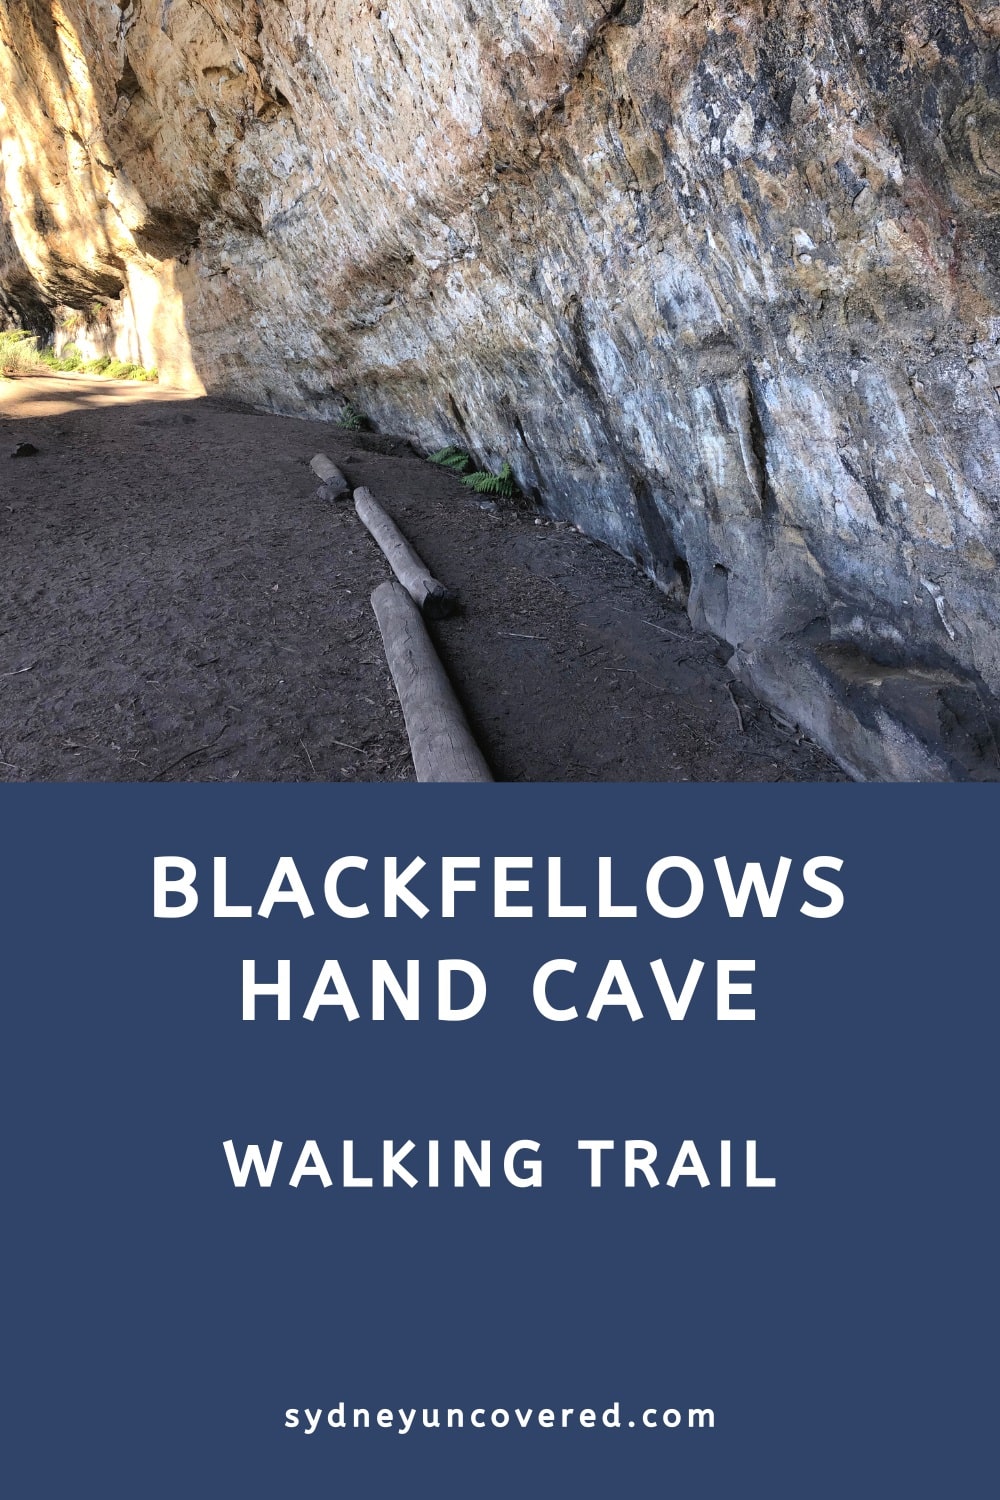 Blackfellows Hand Cave walking trail